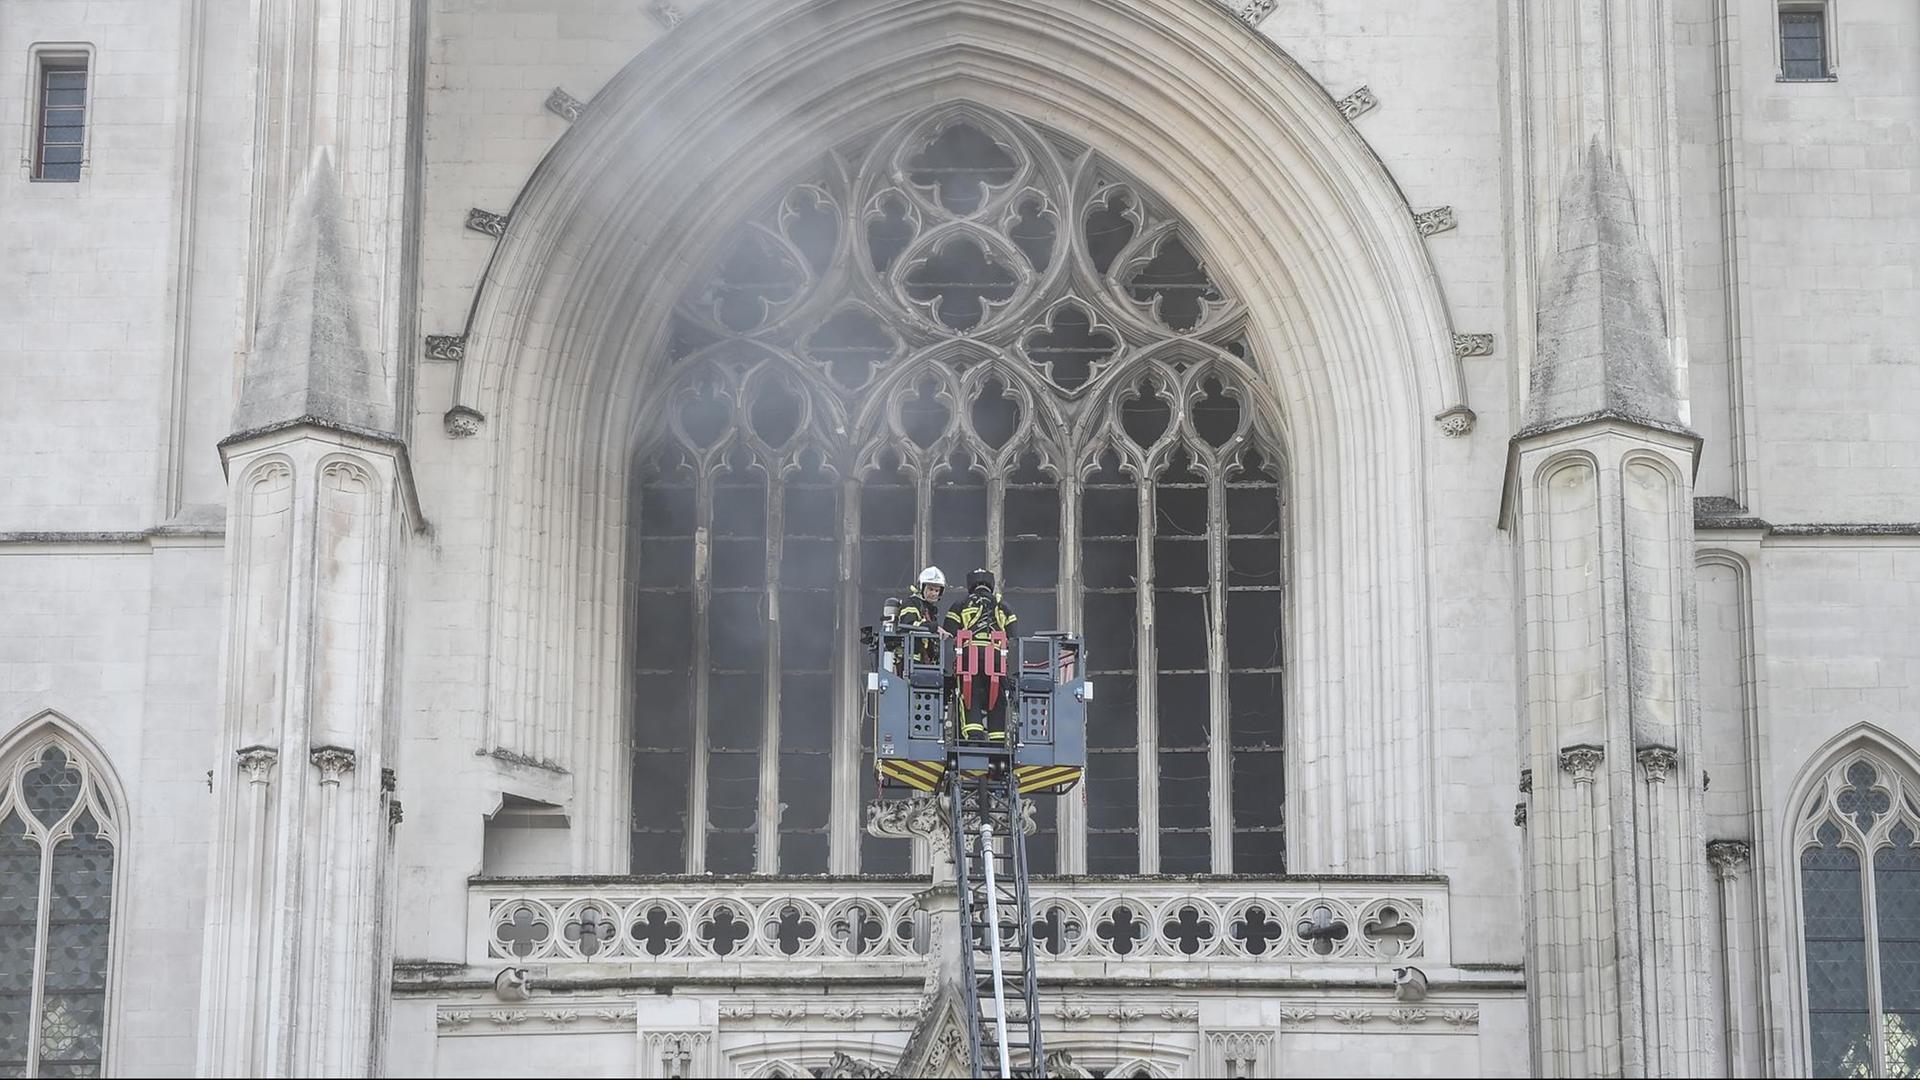 Feuerwehr-Leute stehen auf einer Leiter vor einem Kirchen-Fenster. Es qualmt sehr stark.